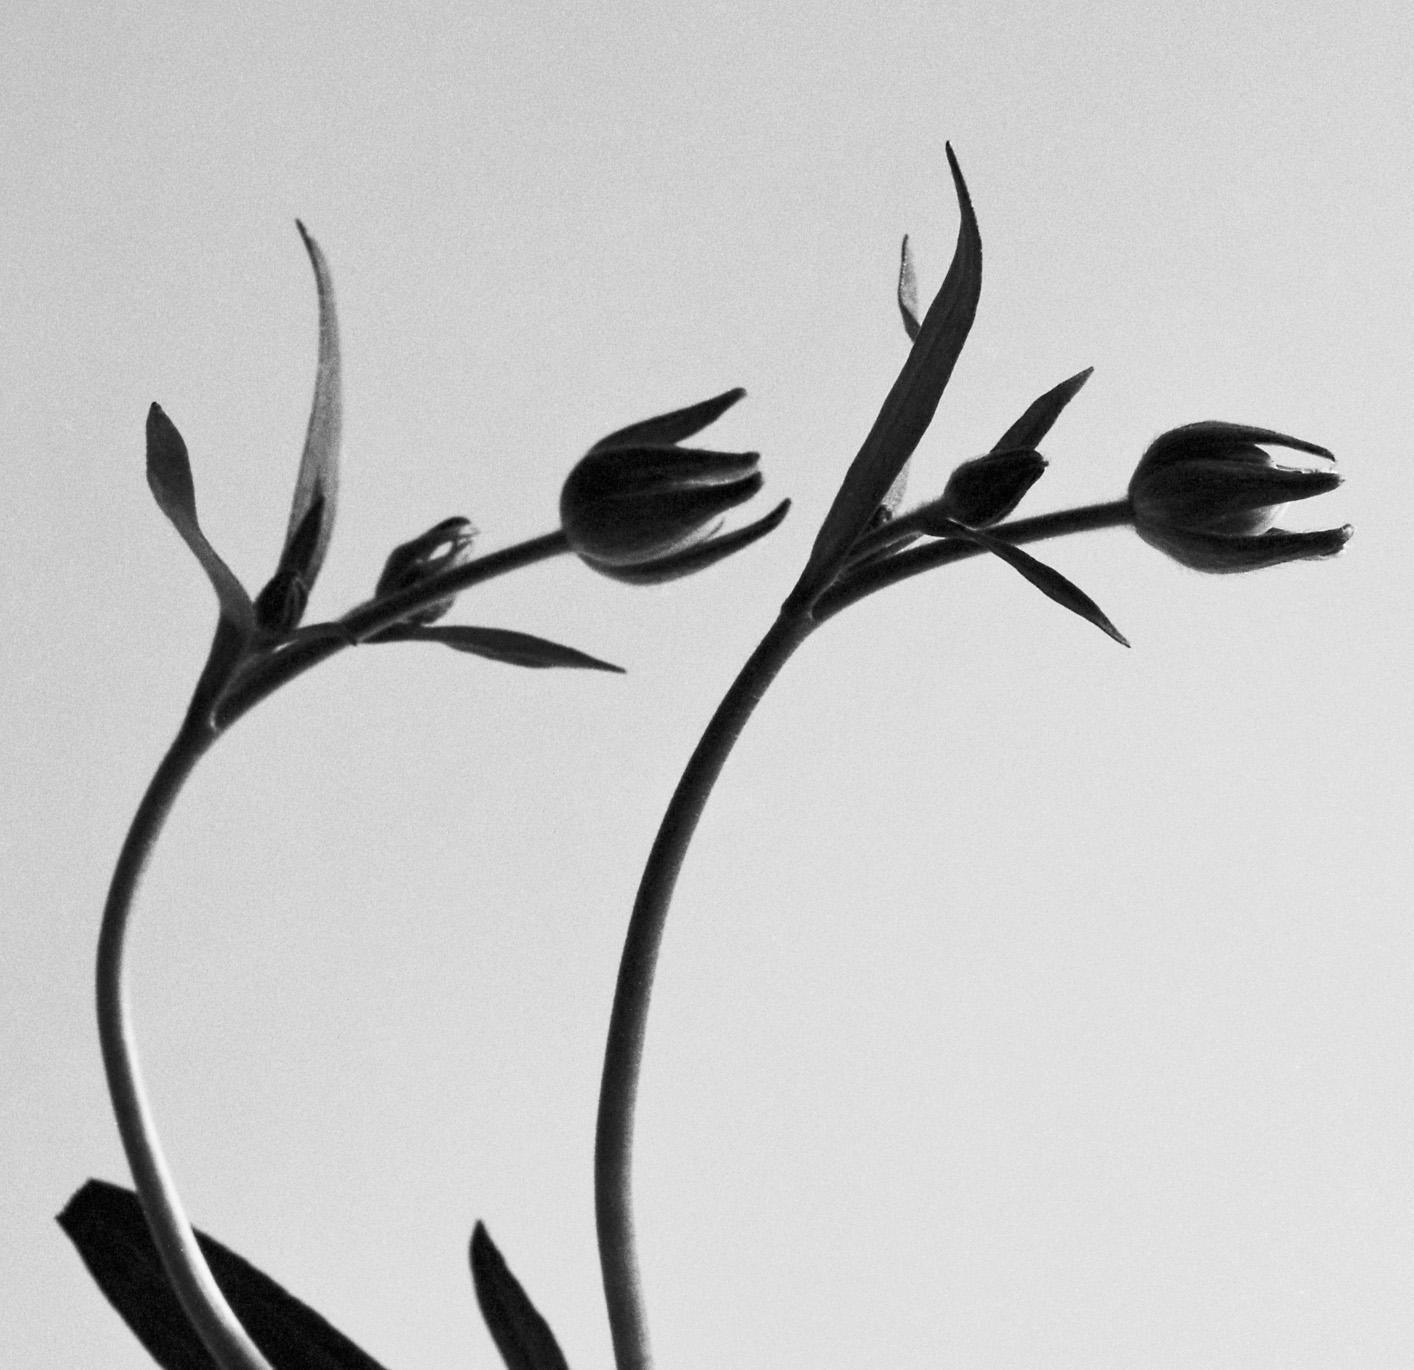 Ranunculus Schmetterling Nr.2 – analoge Schwarz-Weiß-Blumenfotografie (Naturalismus), Photograph, von Ugne Pouwell